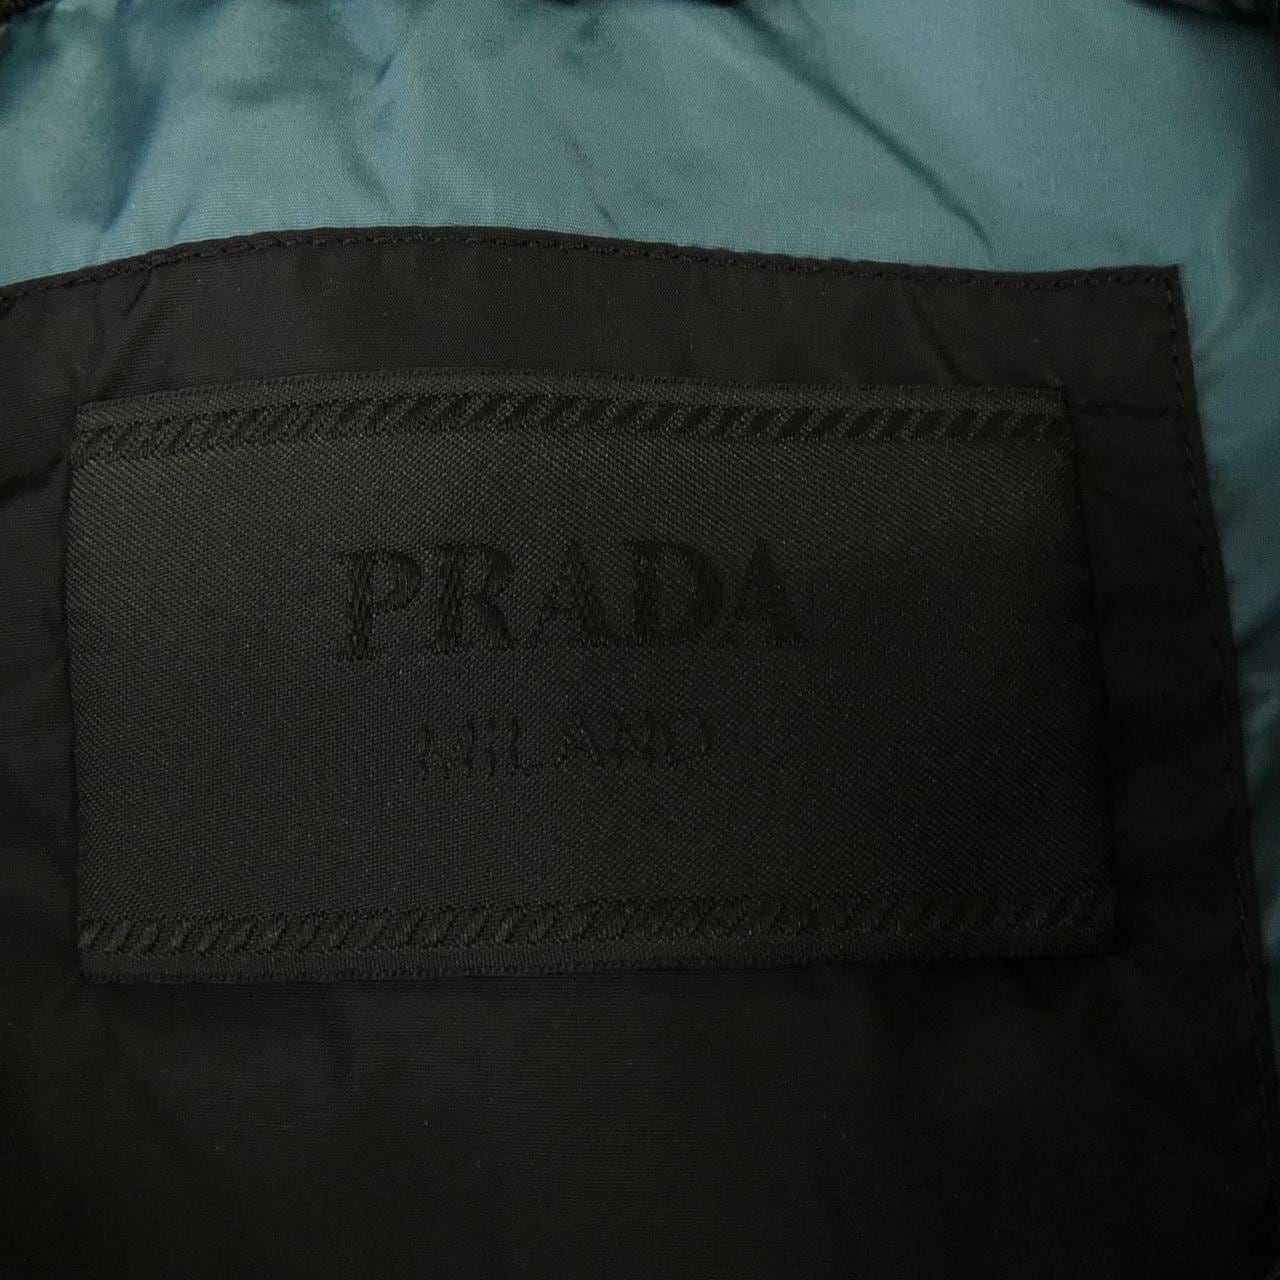 プラダ PRADA ブルゾン